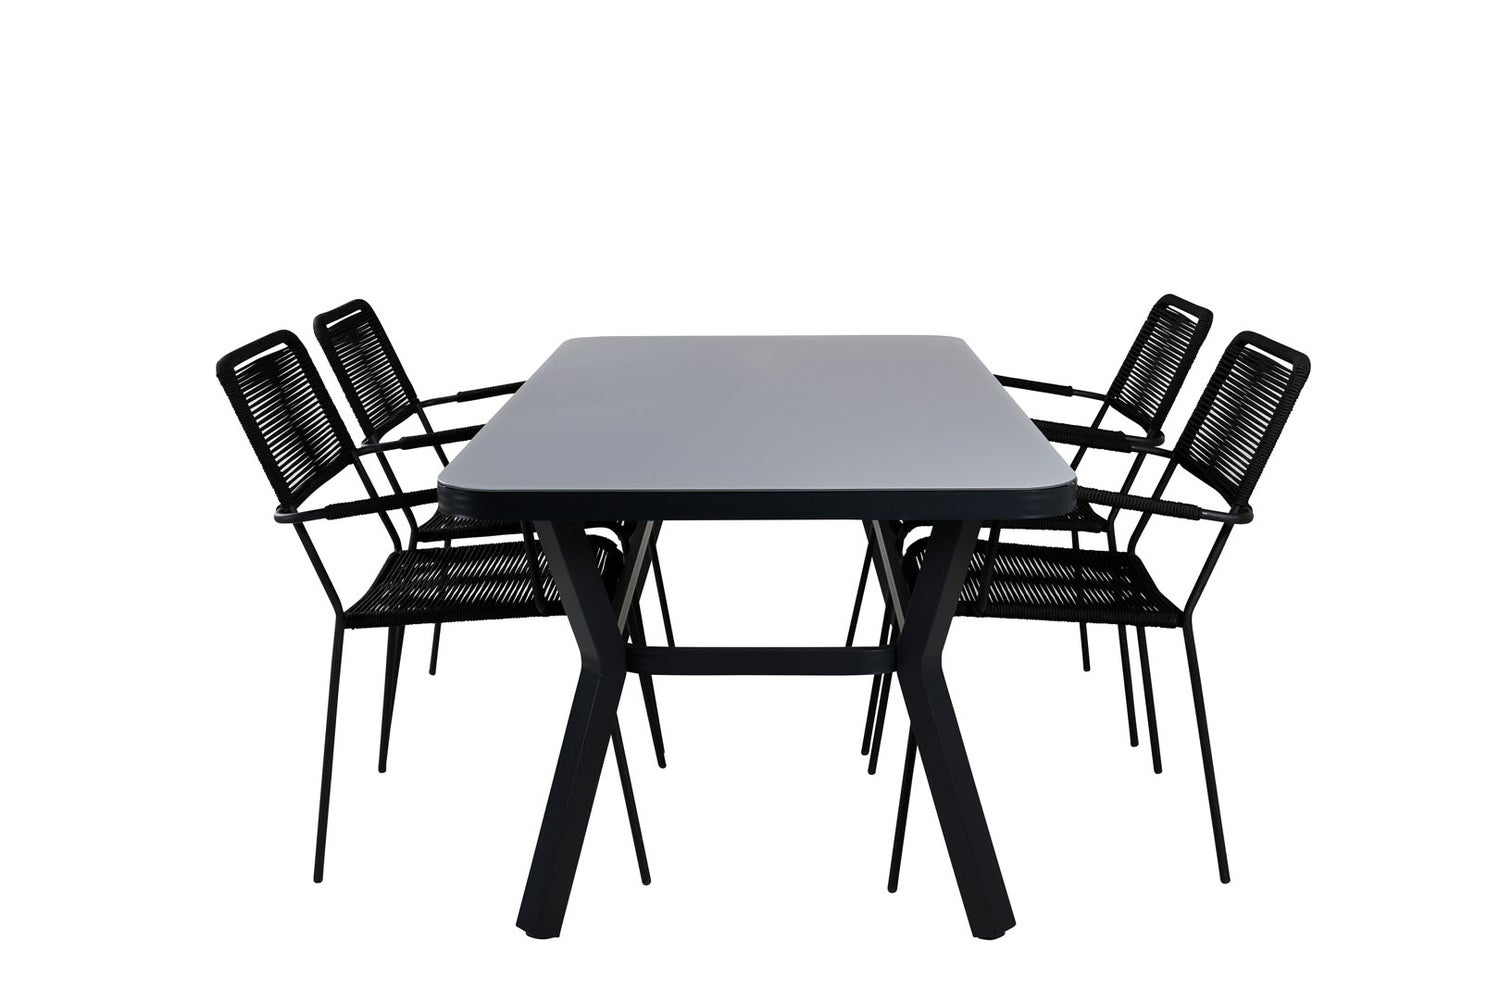 Virya Gartenset Tisch 90x160cm und 4 Stühle ArmlehneS Lindos schwarz, grau.